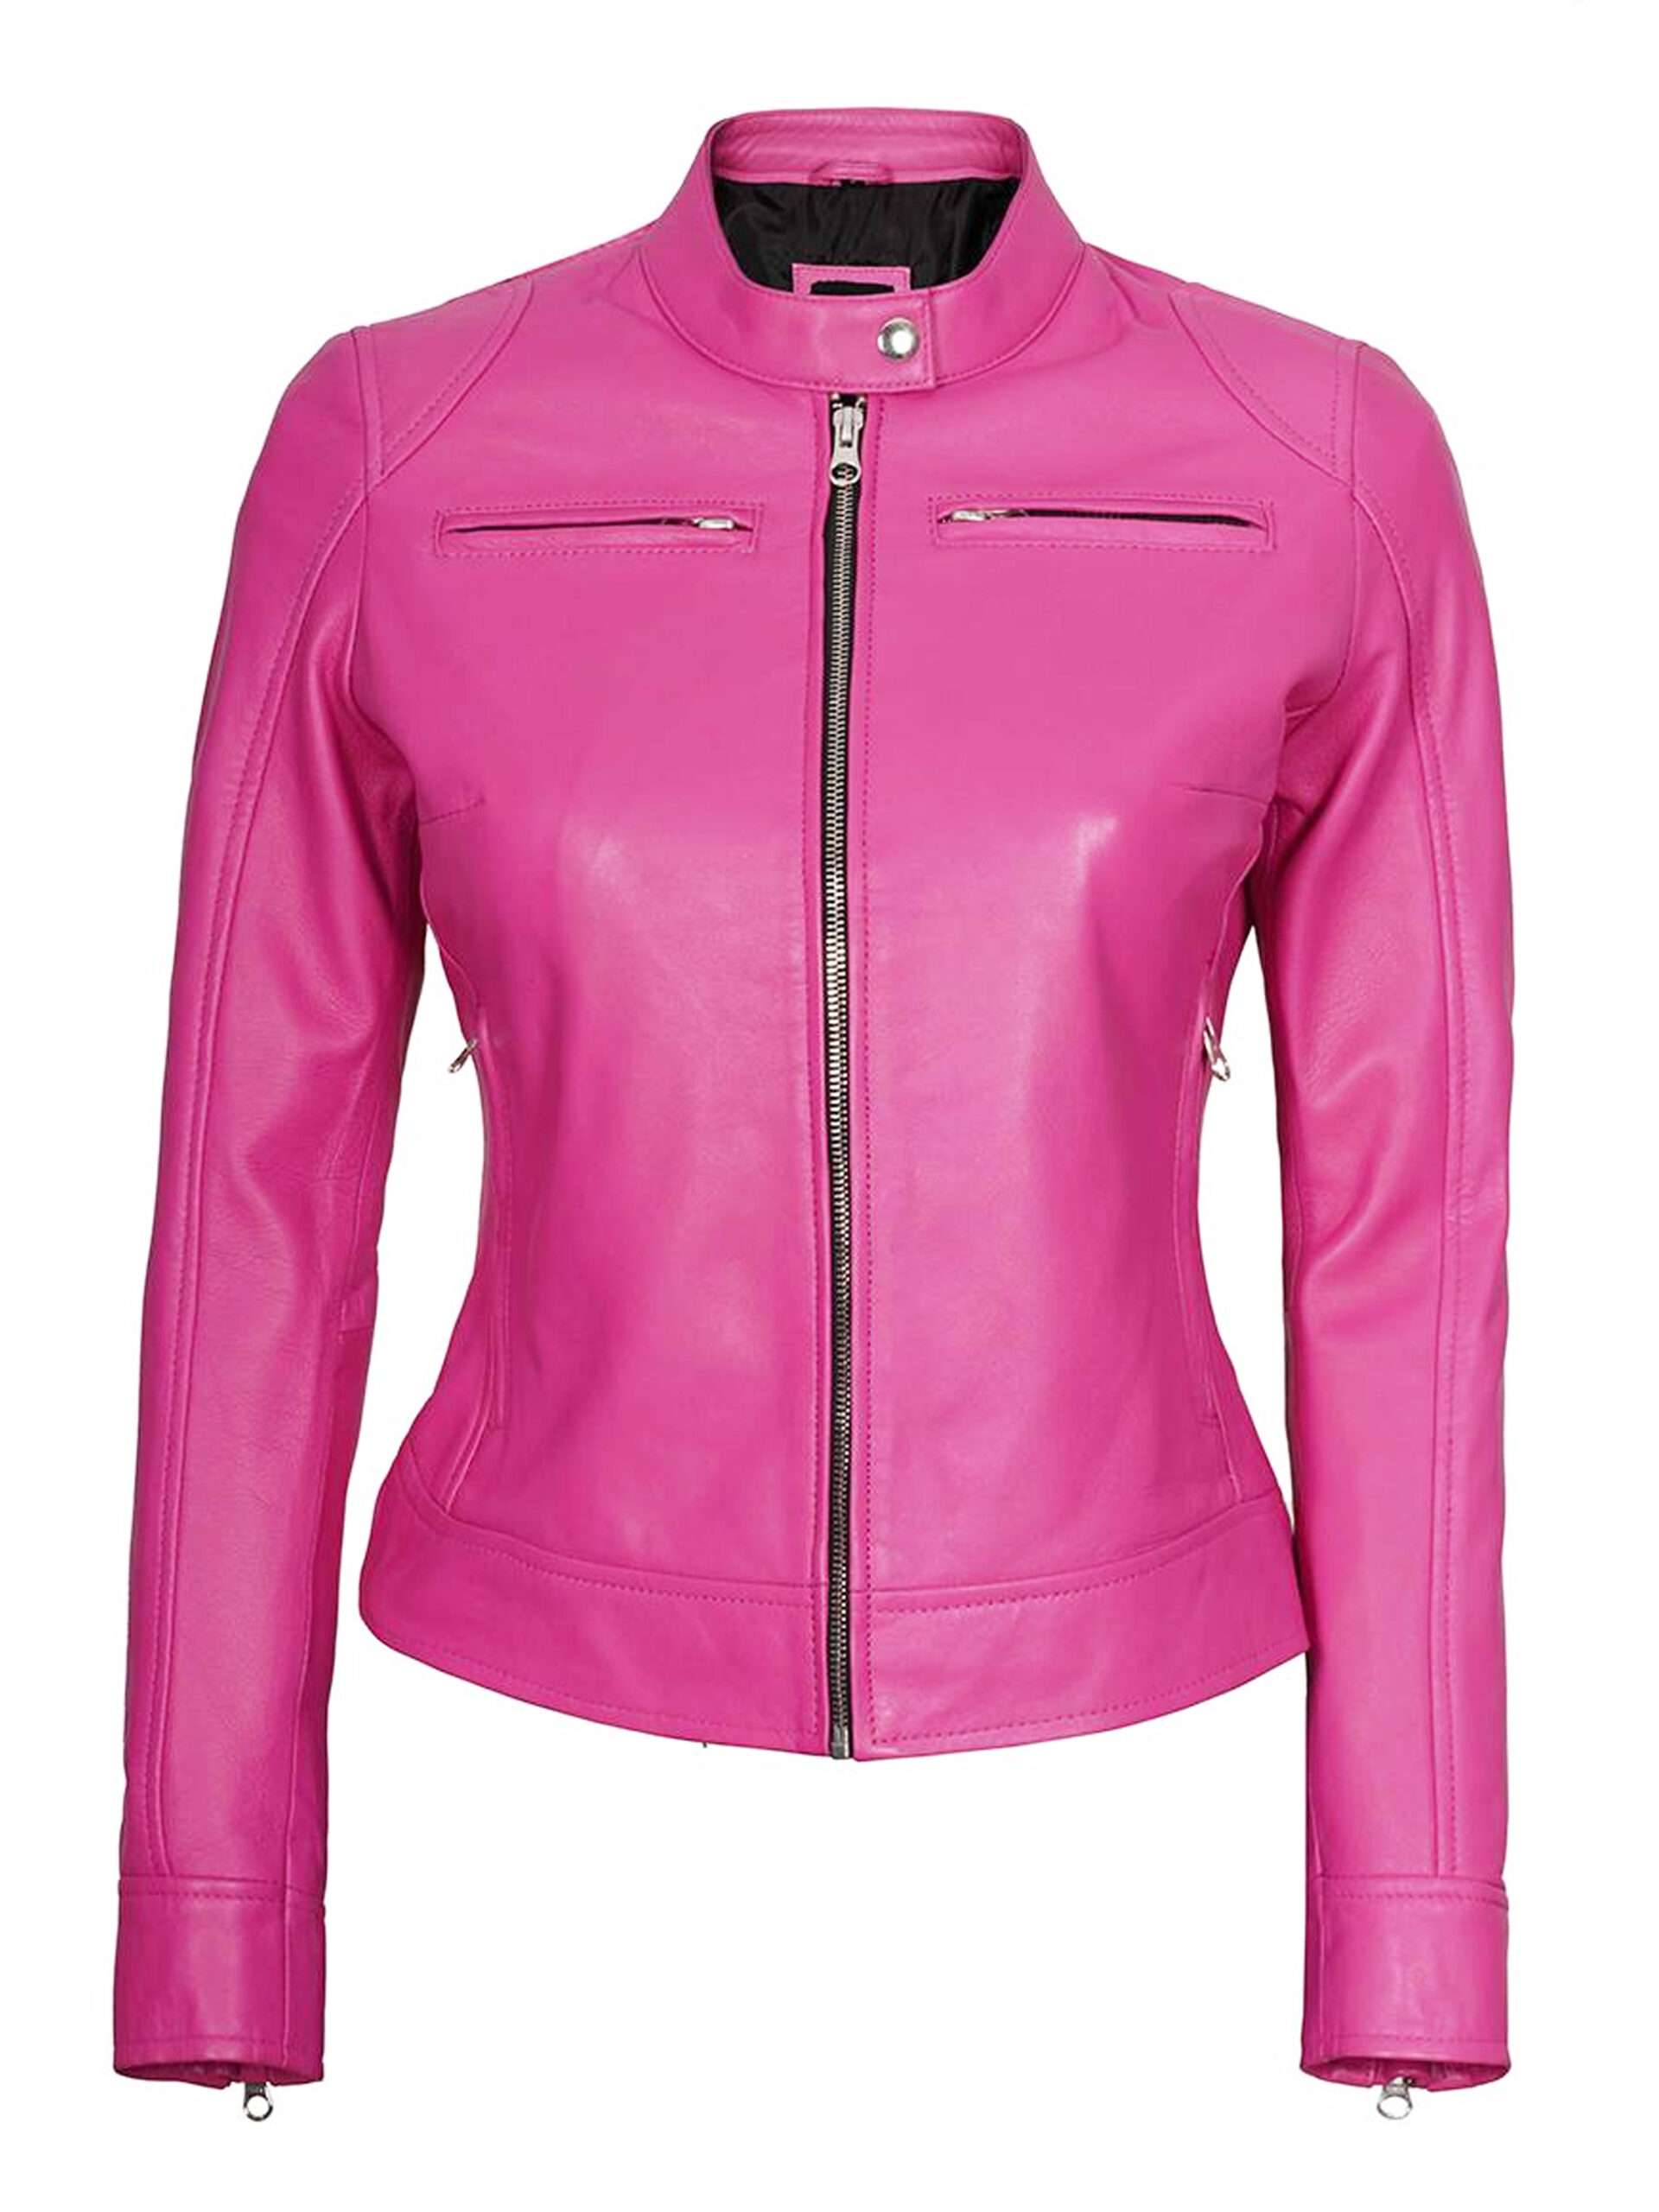 Dodge Cafe Racer Pink Biker Leather Jacket